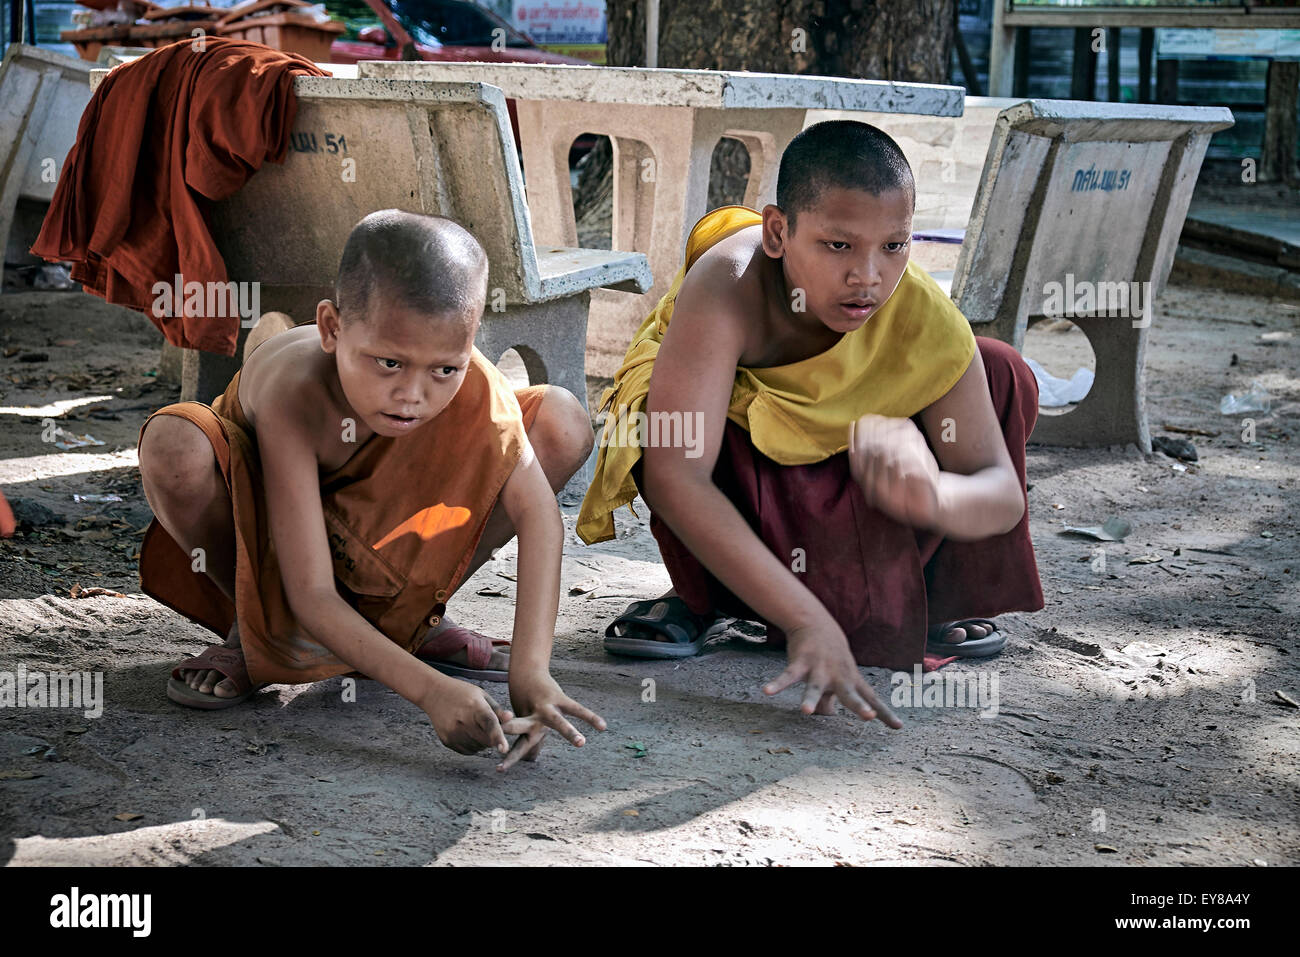 Jouer à des marbres. Jeune garçon moines bouddhistes jouant le jeu traditionnel de marbres. Thaïlande S. E. Asie Banque D'Images